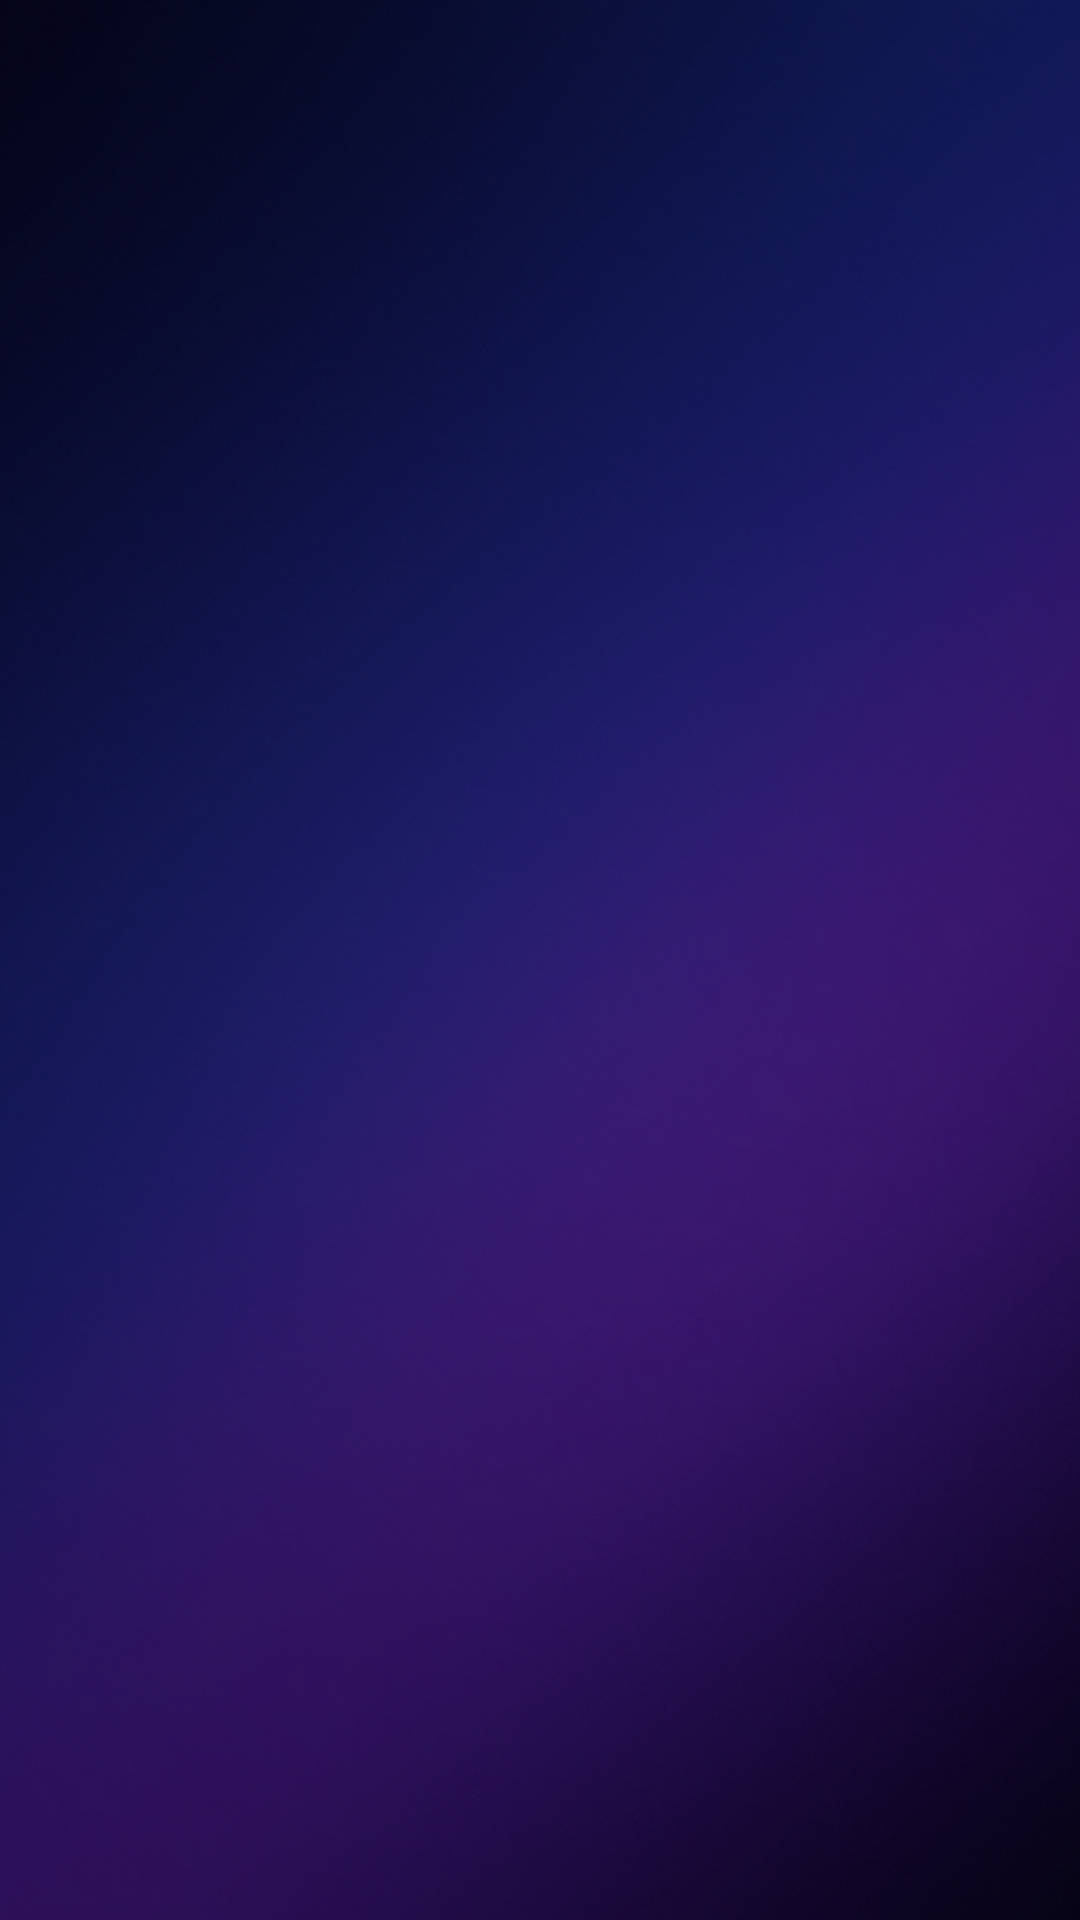 Blaueund Violette Galaxy S10 Wallpaper